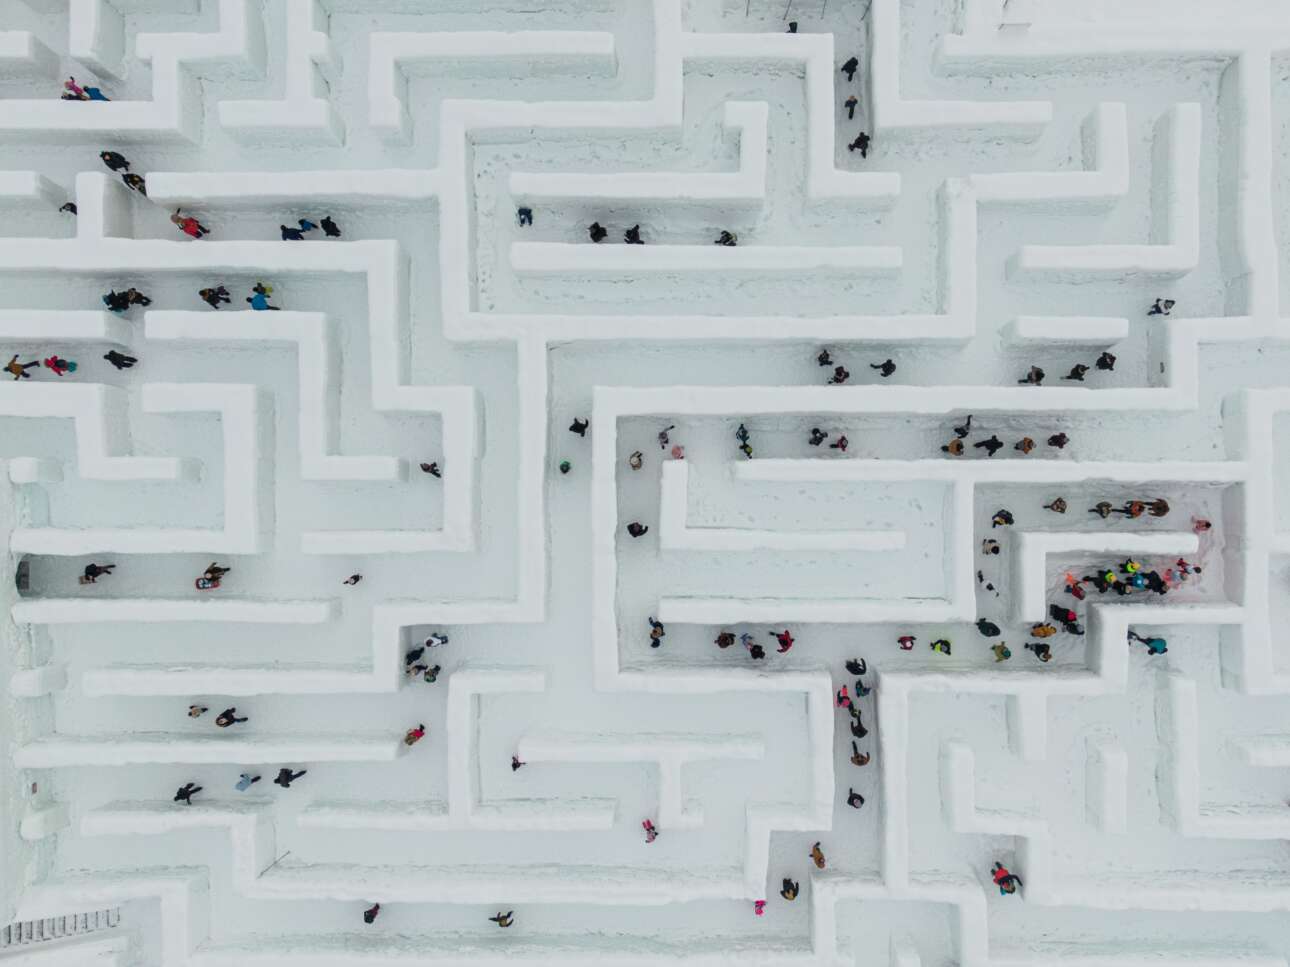 Αεροφωτογραφία του λαβυρίνθου του χειμερινού θεματικού πάρκου Snowlandia, στην περιοχή Ζακοπάνε της Πολωνίας, το οποίο εφέτος επαναλειτουργεί έπειτα από το κορονοϊκό lockdown